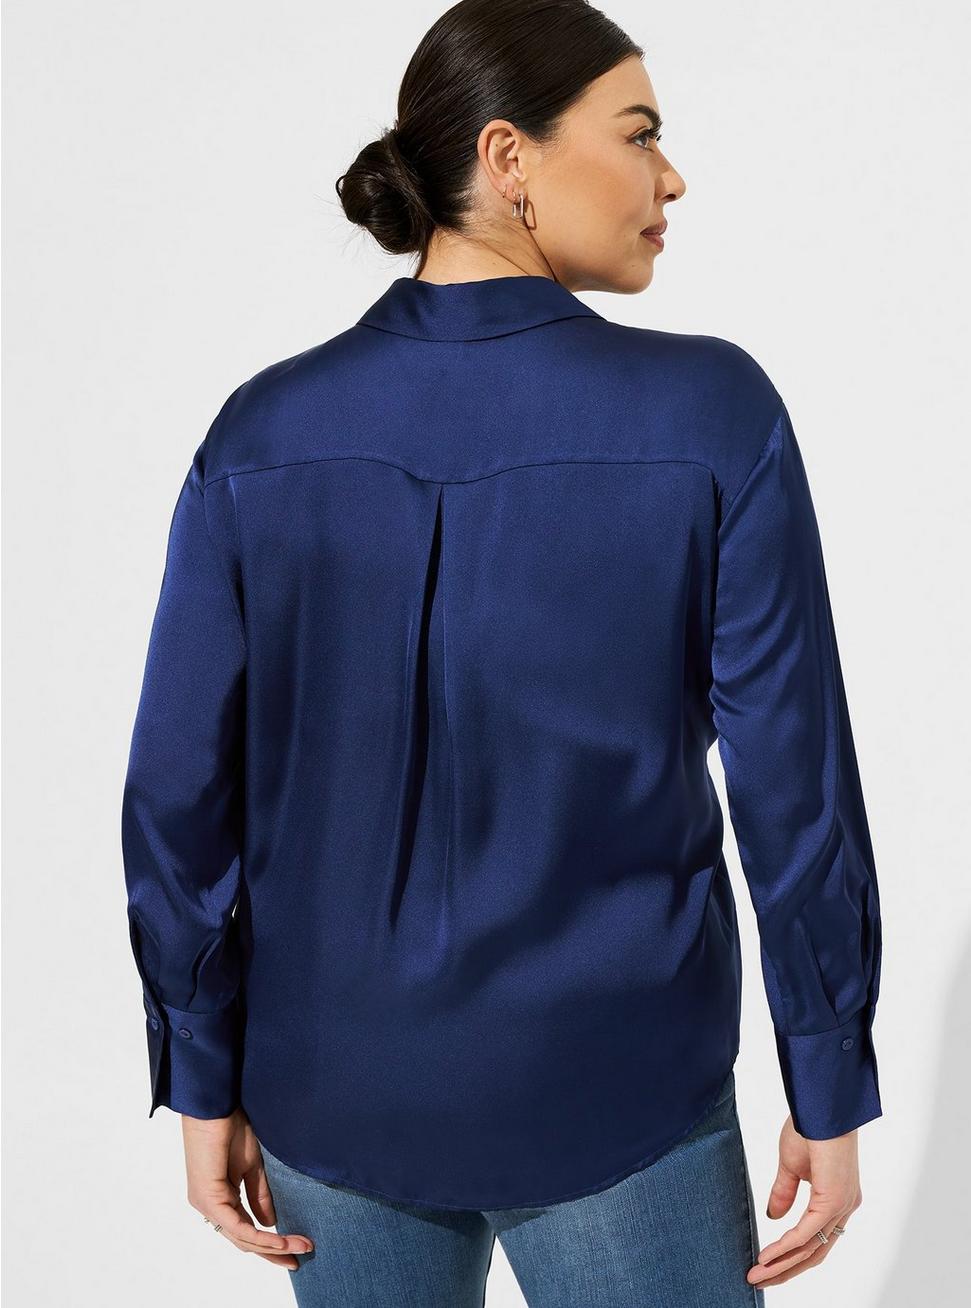 Satin Button Up Long Sleeve Shirt, MIDNIGHT BLUE, alternate